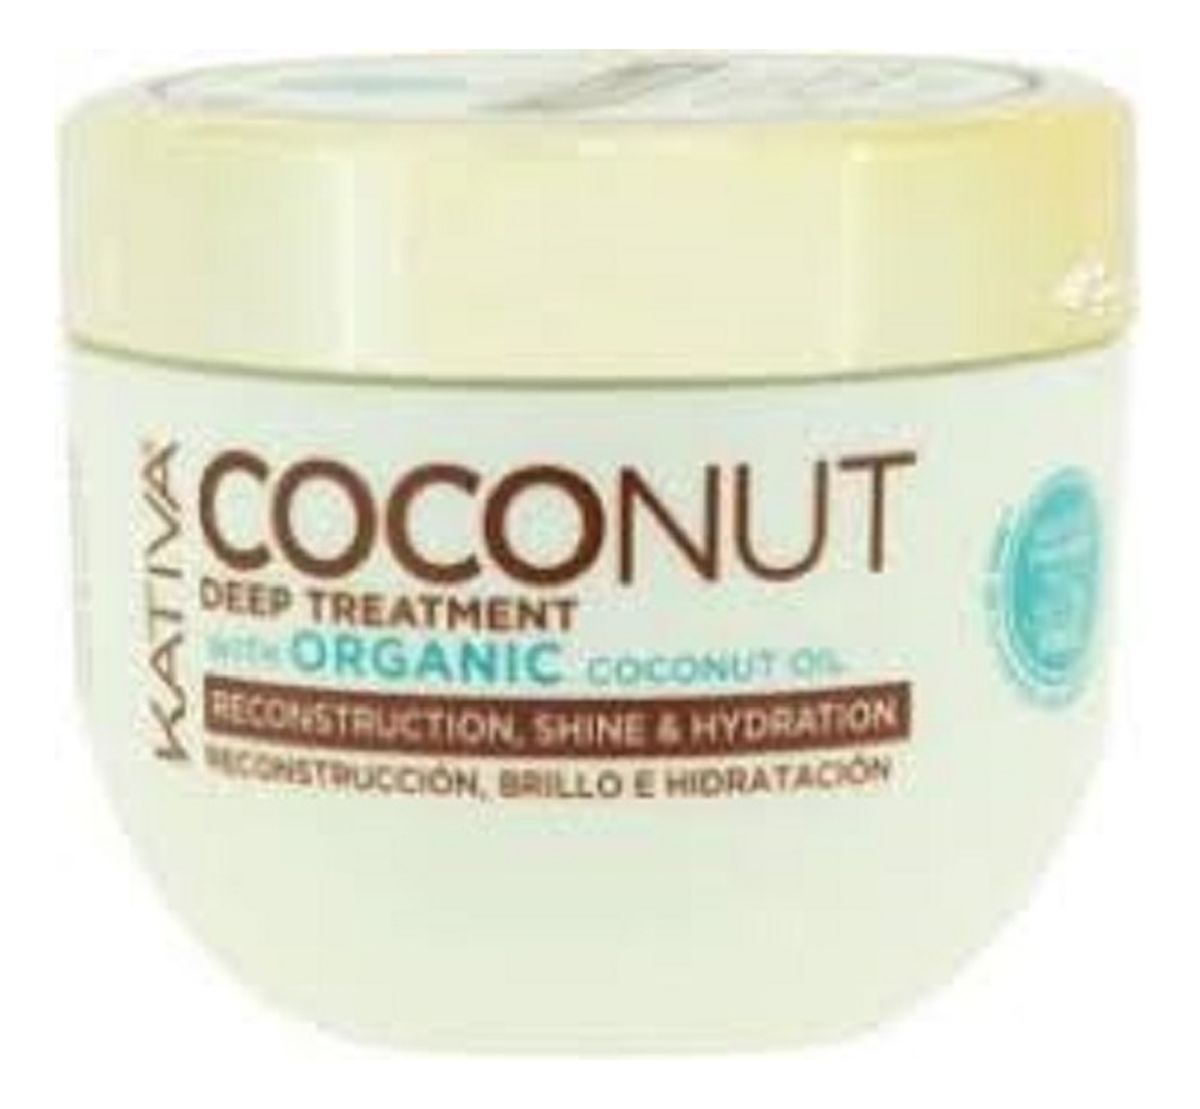 Coconut deep treatment kokosowa maska do włosów odbudowująca i nadająca połysku